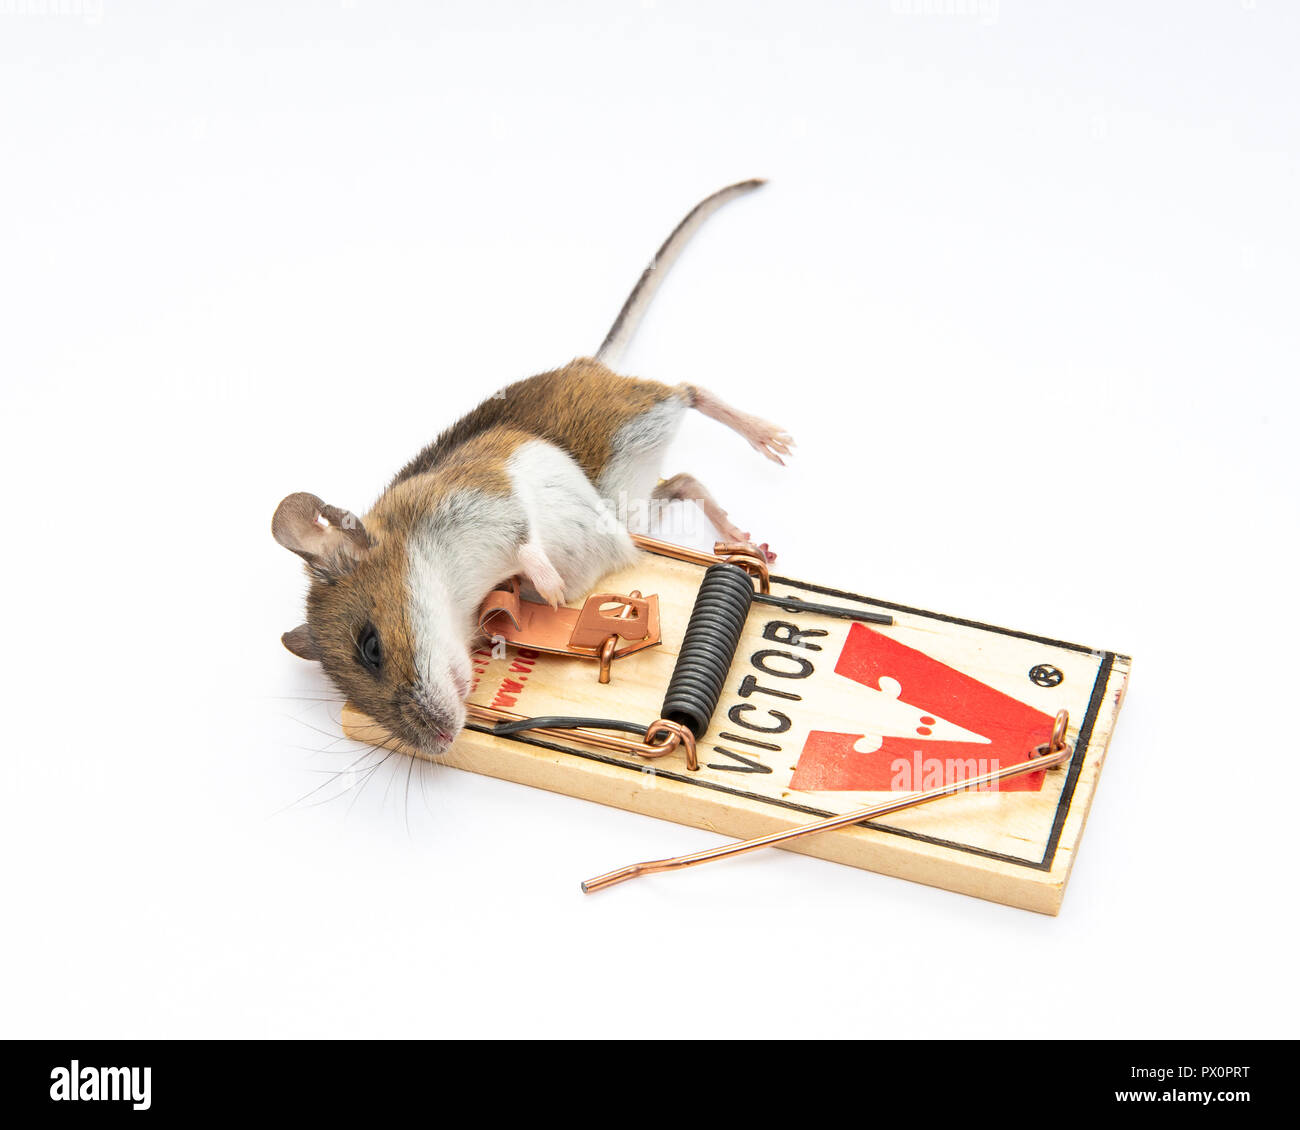 https://c8.alamy.com/comp/PX0PRT/dead-mouse-caught-in-victor-mouse-trap-PX0PRT.jpg